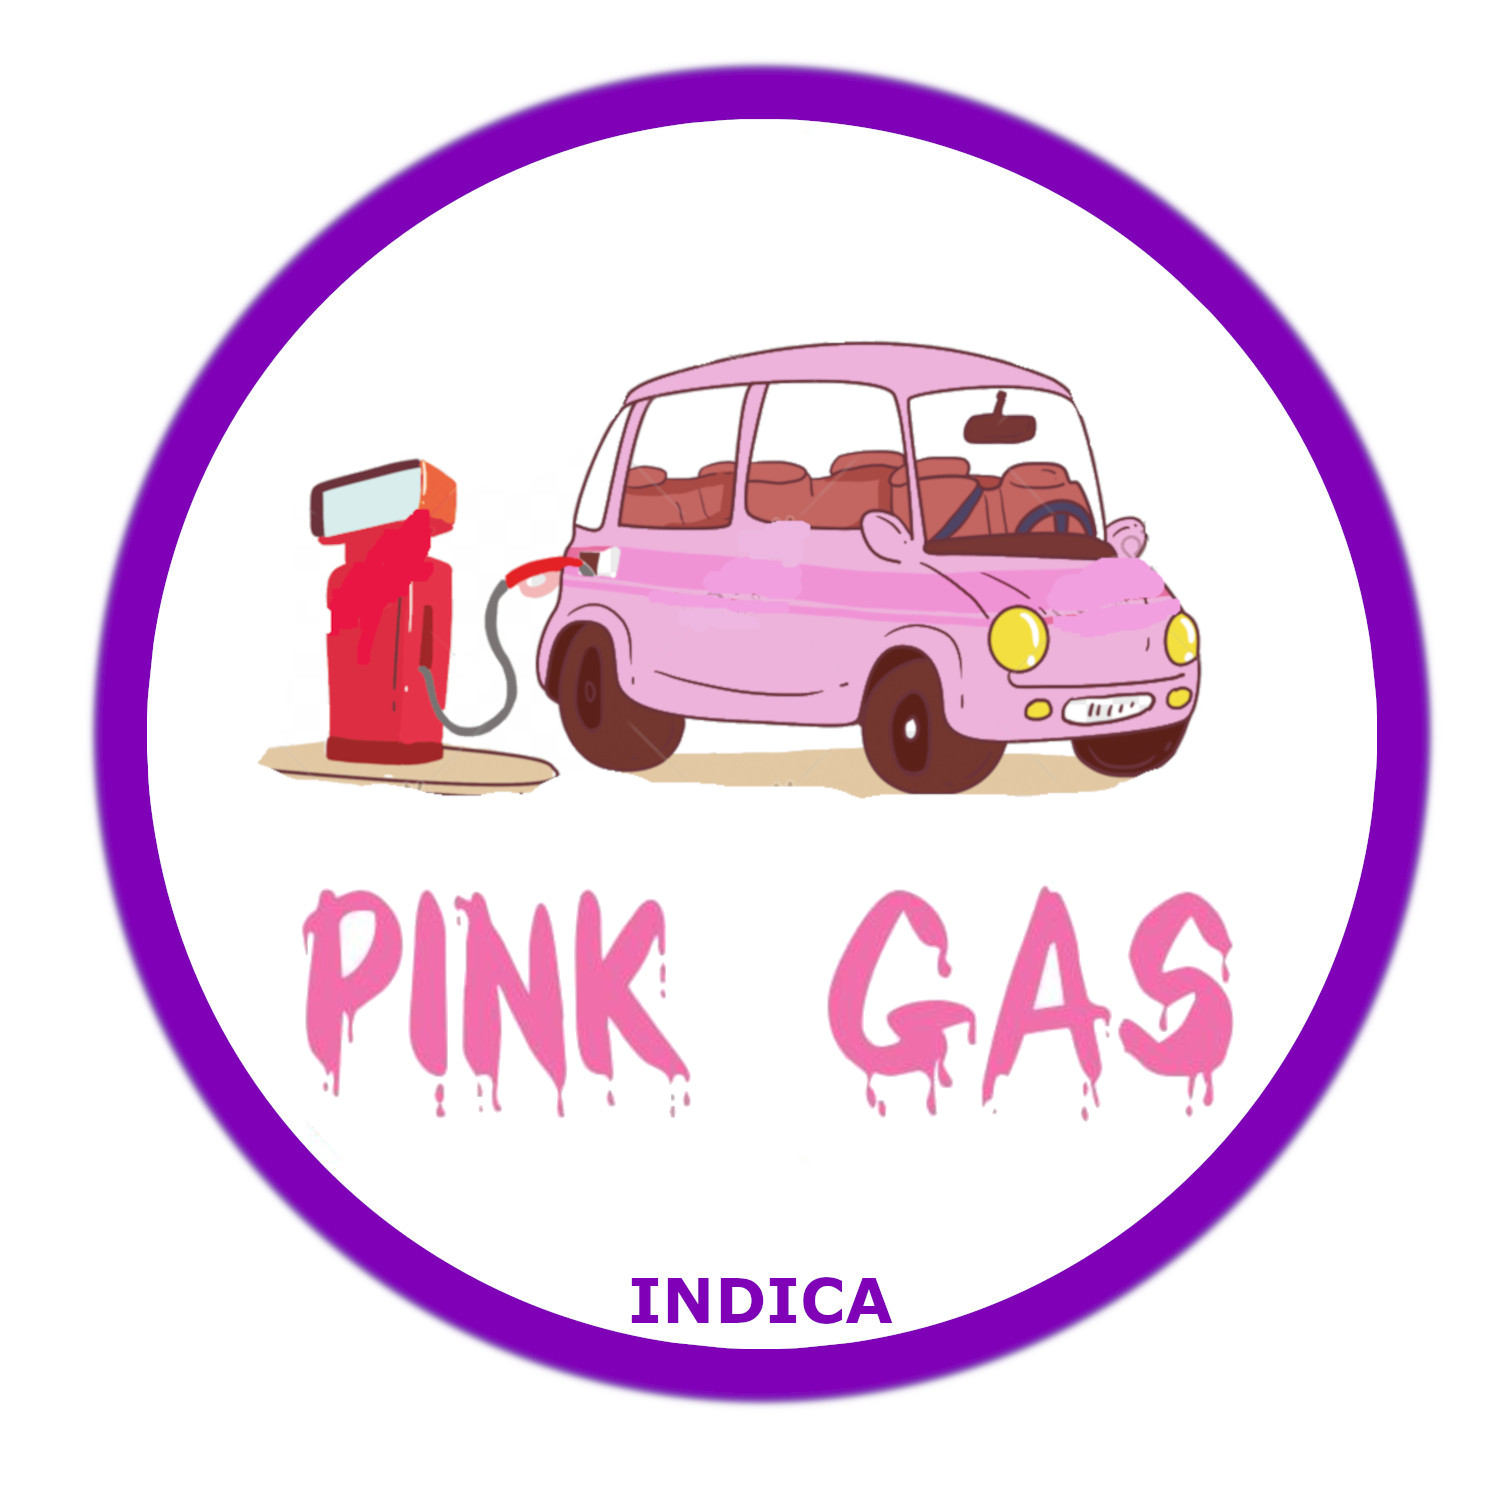 Pink Gas